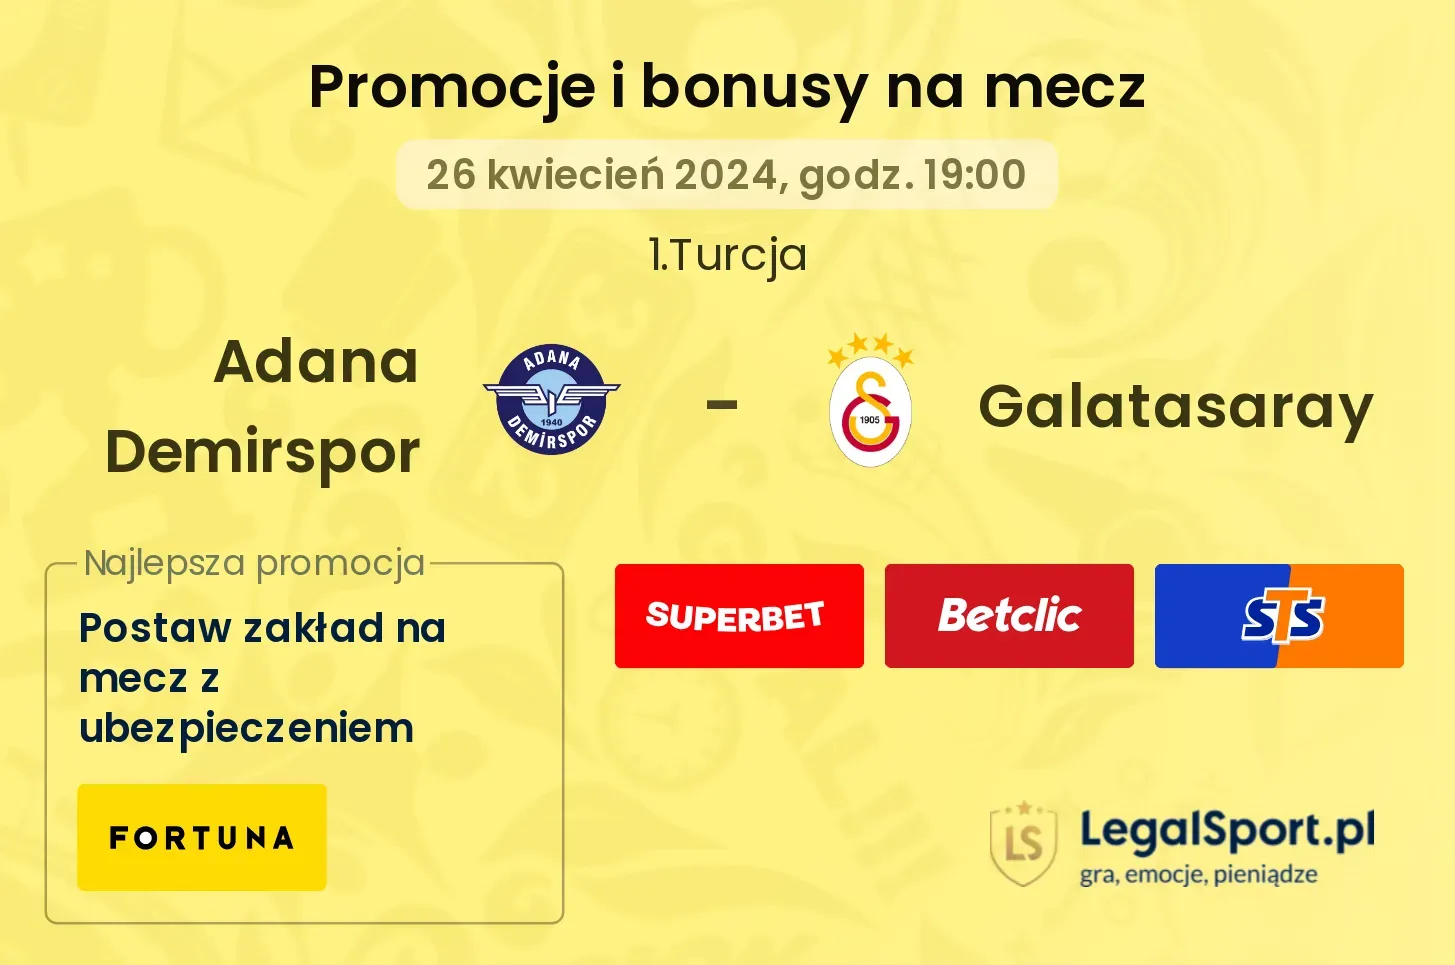 Adana Demirspor - Galatasaray promocje bonusy na mecz